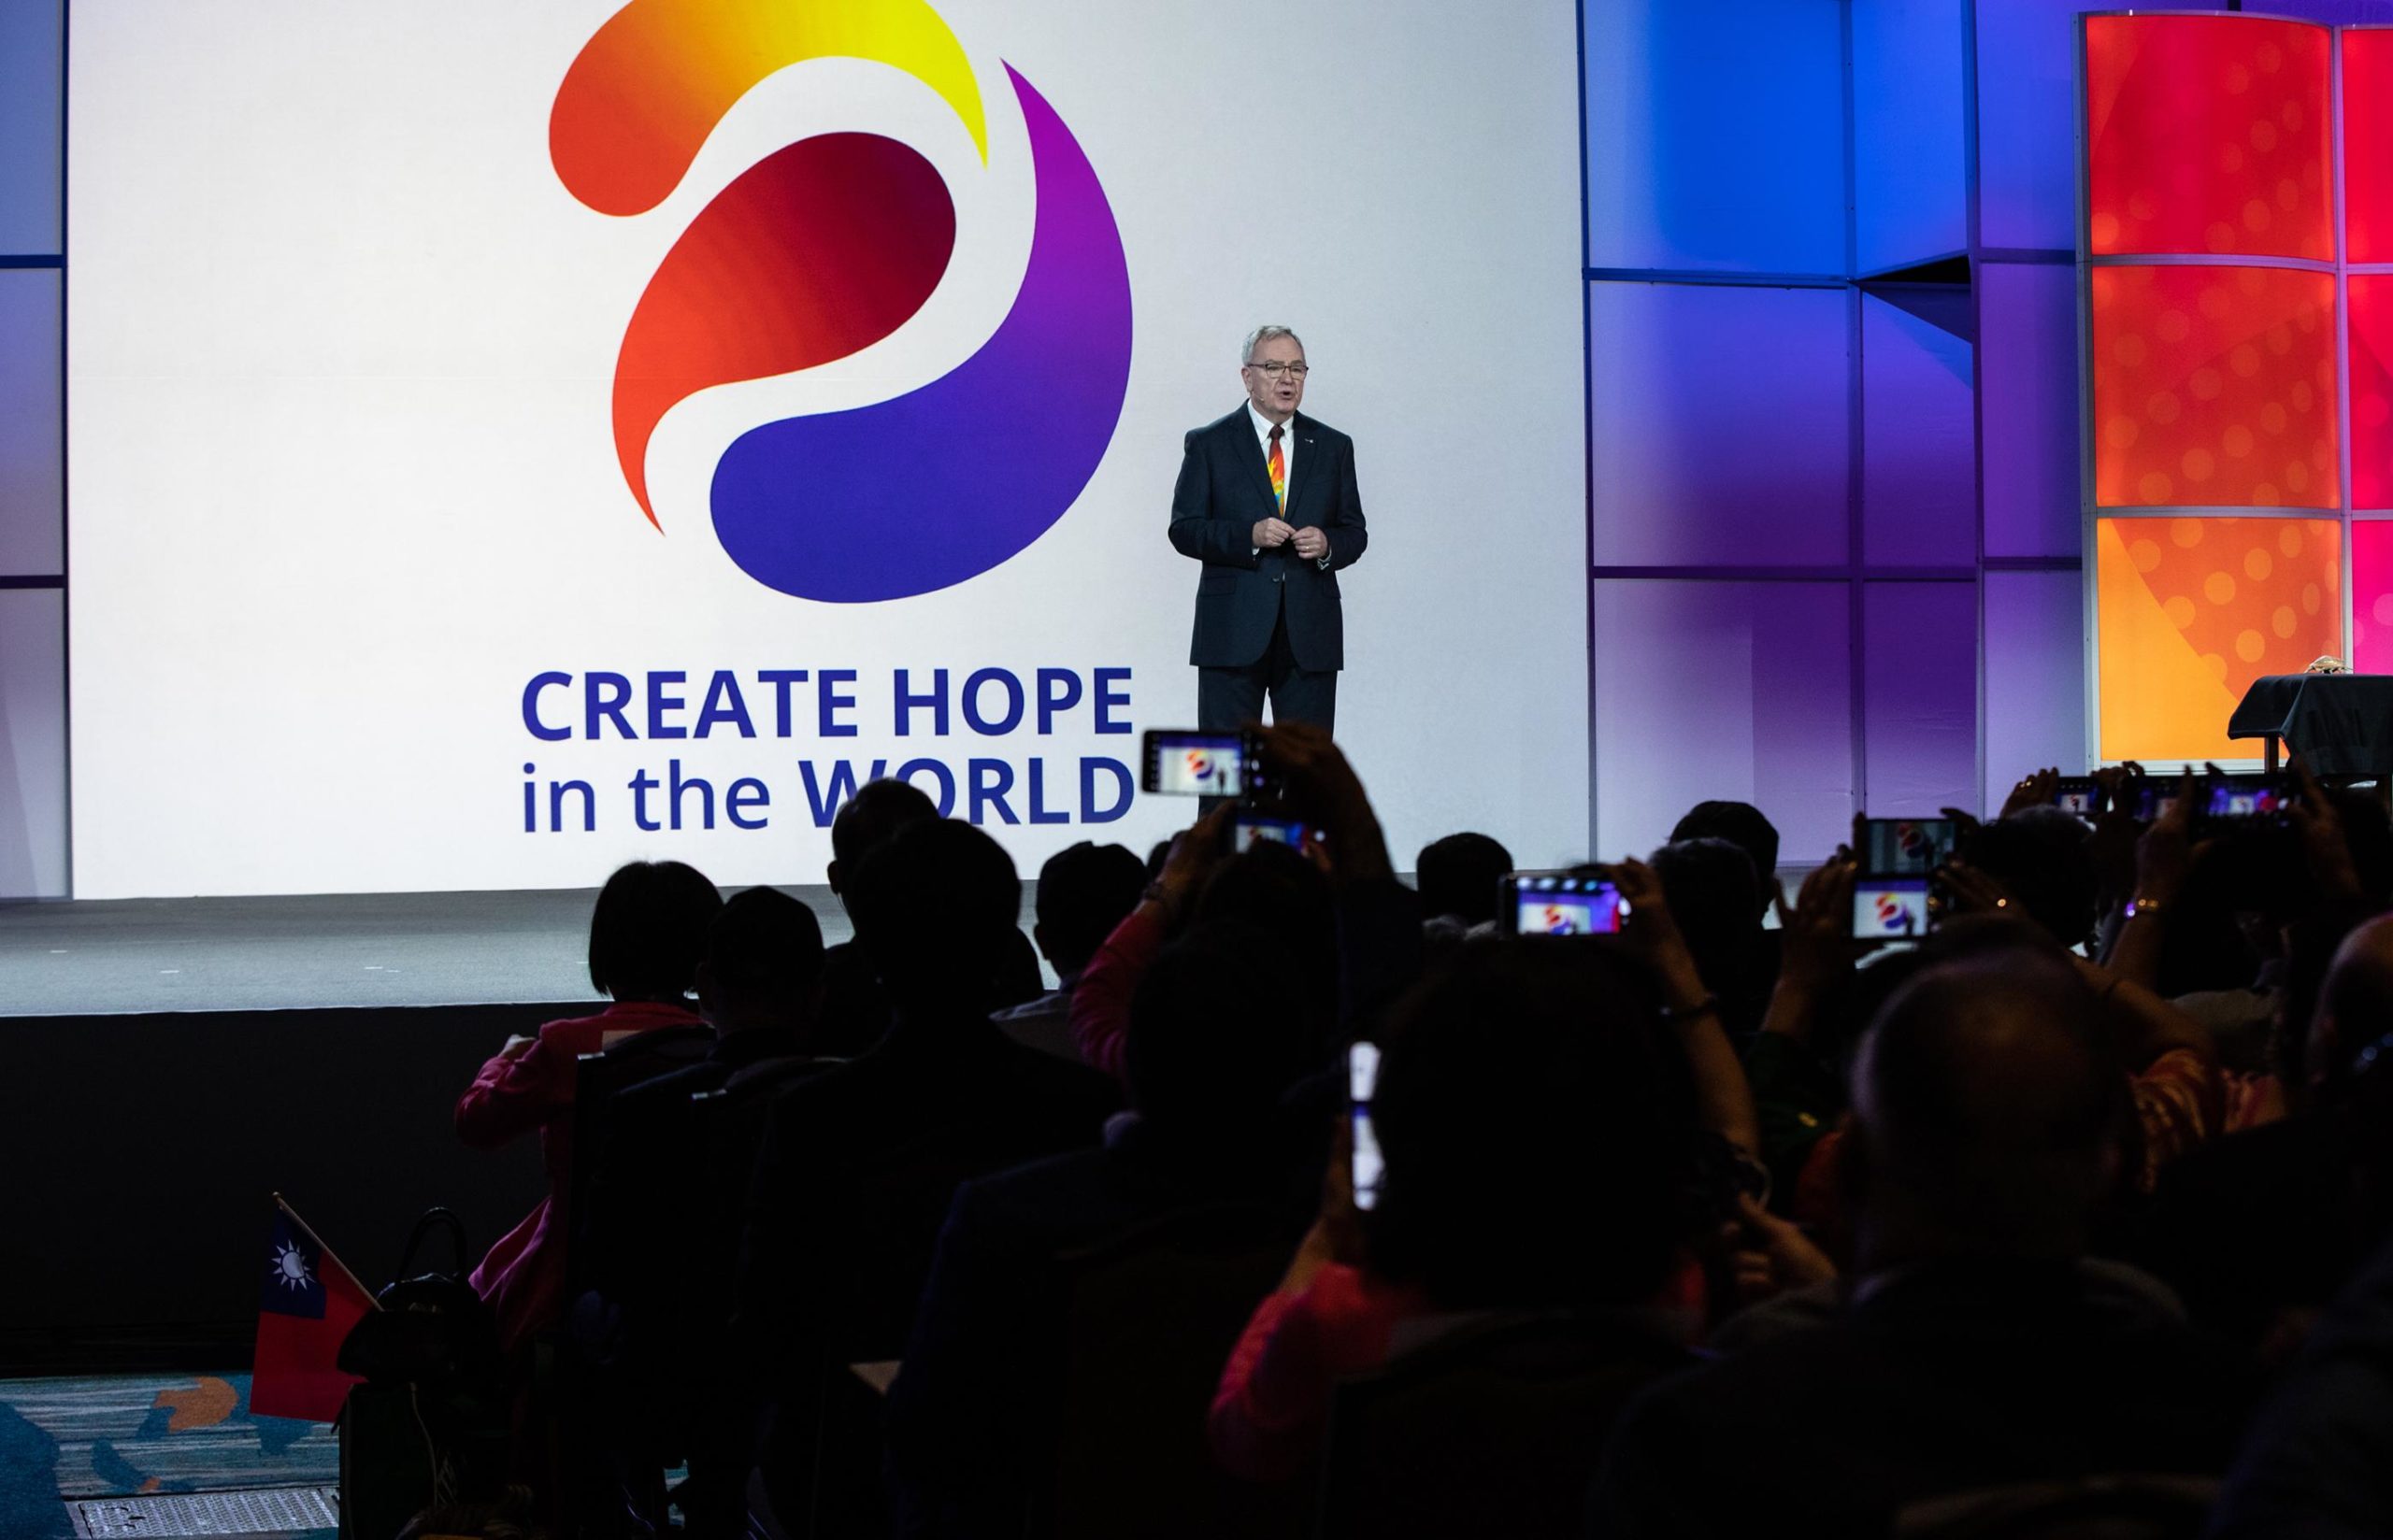 R. Gordon R. McInally quiere que los socios de Rotary creen esperanza en el mundo